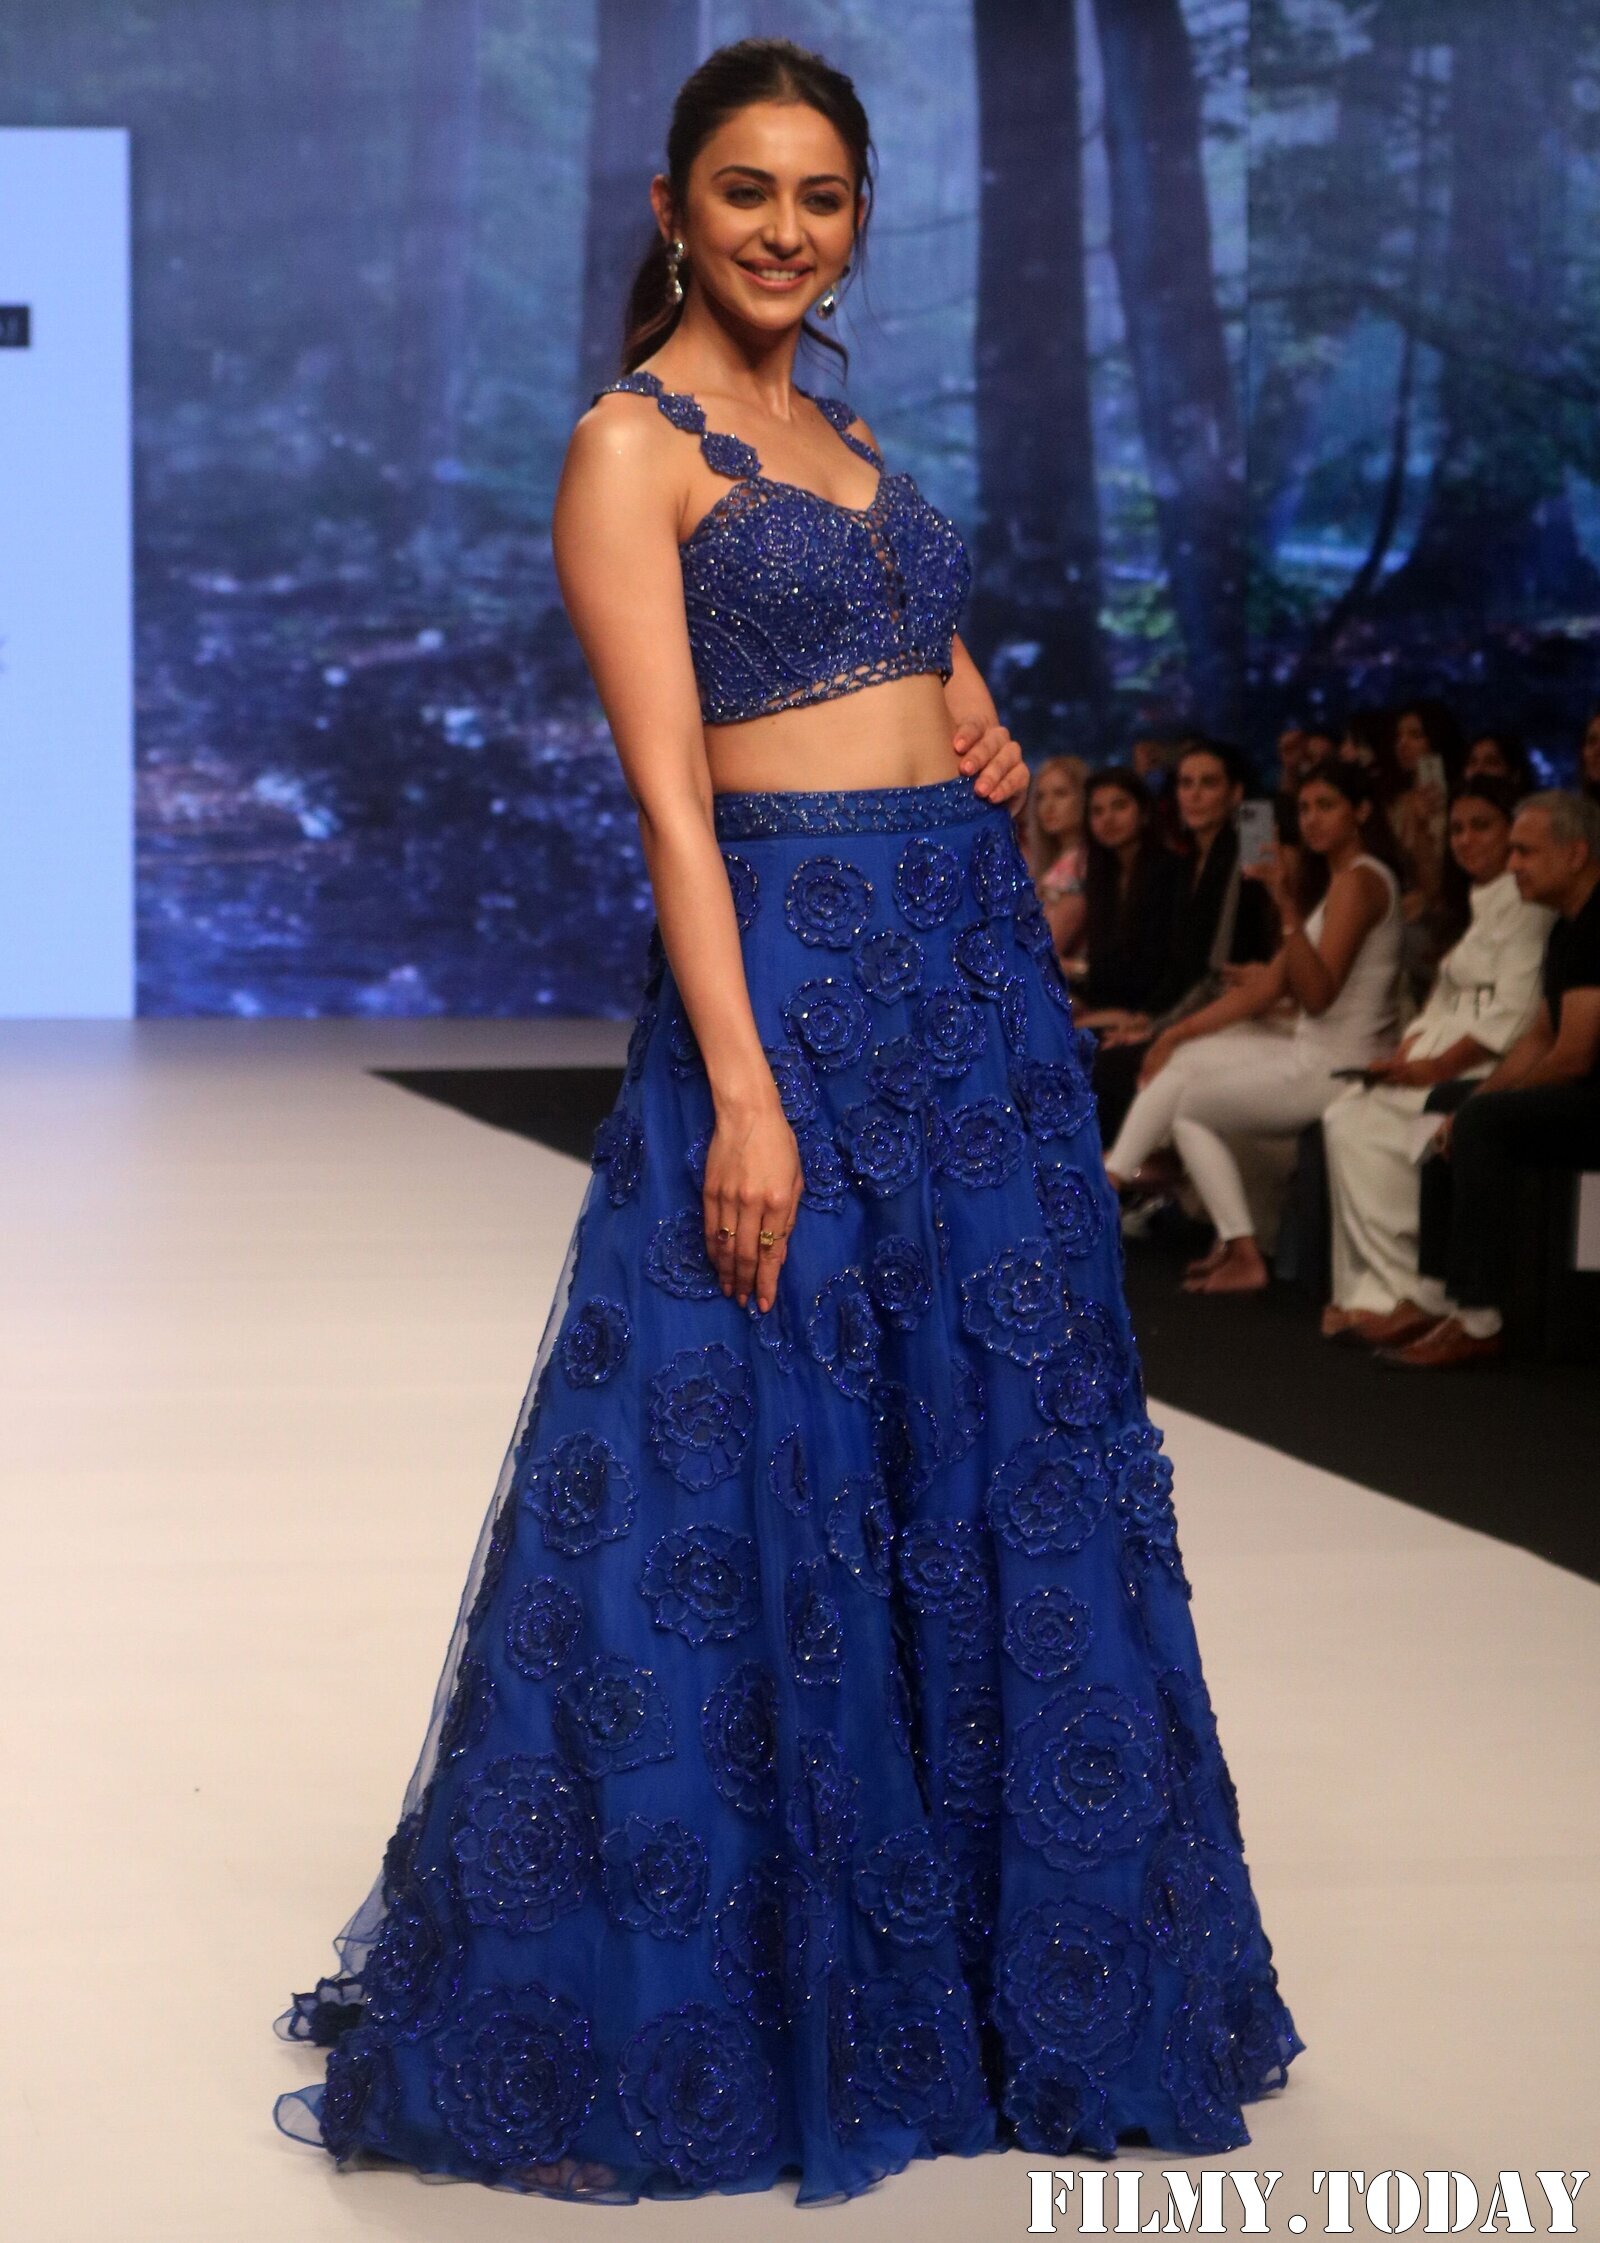 Rakul Preet Singh - Photos: Sonaakshi Raaj At Bombay Times Fashion Week 2021 | Picture 1828659